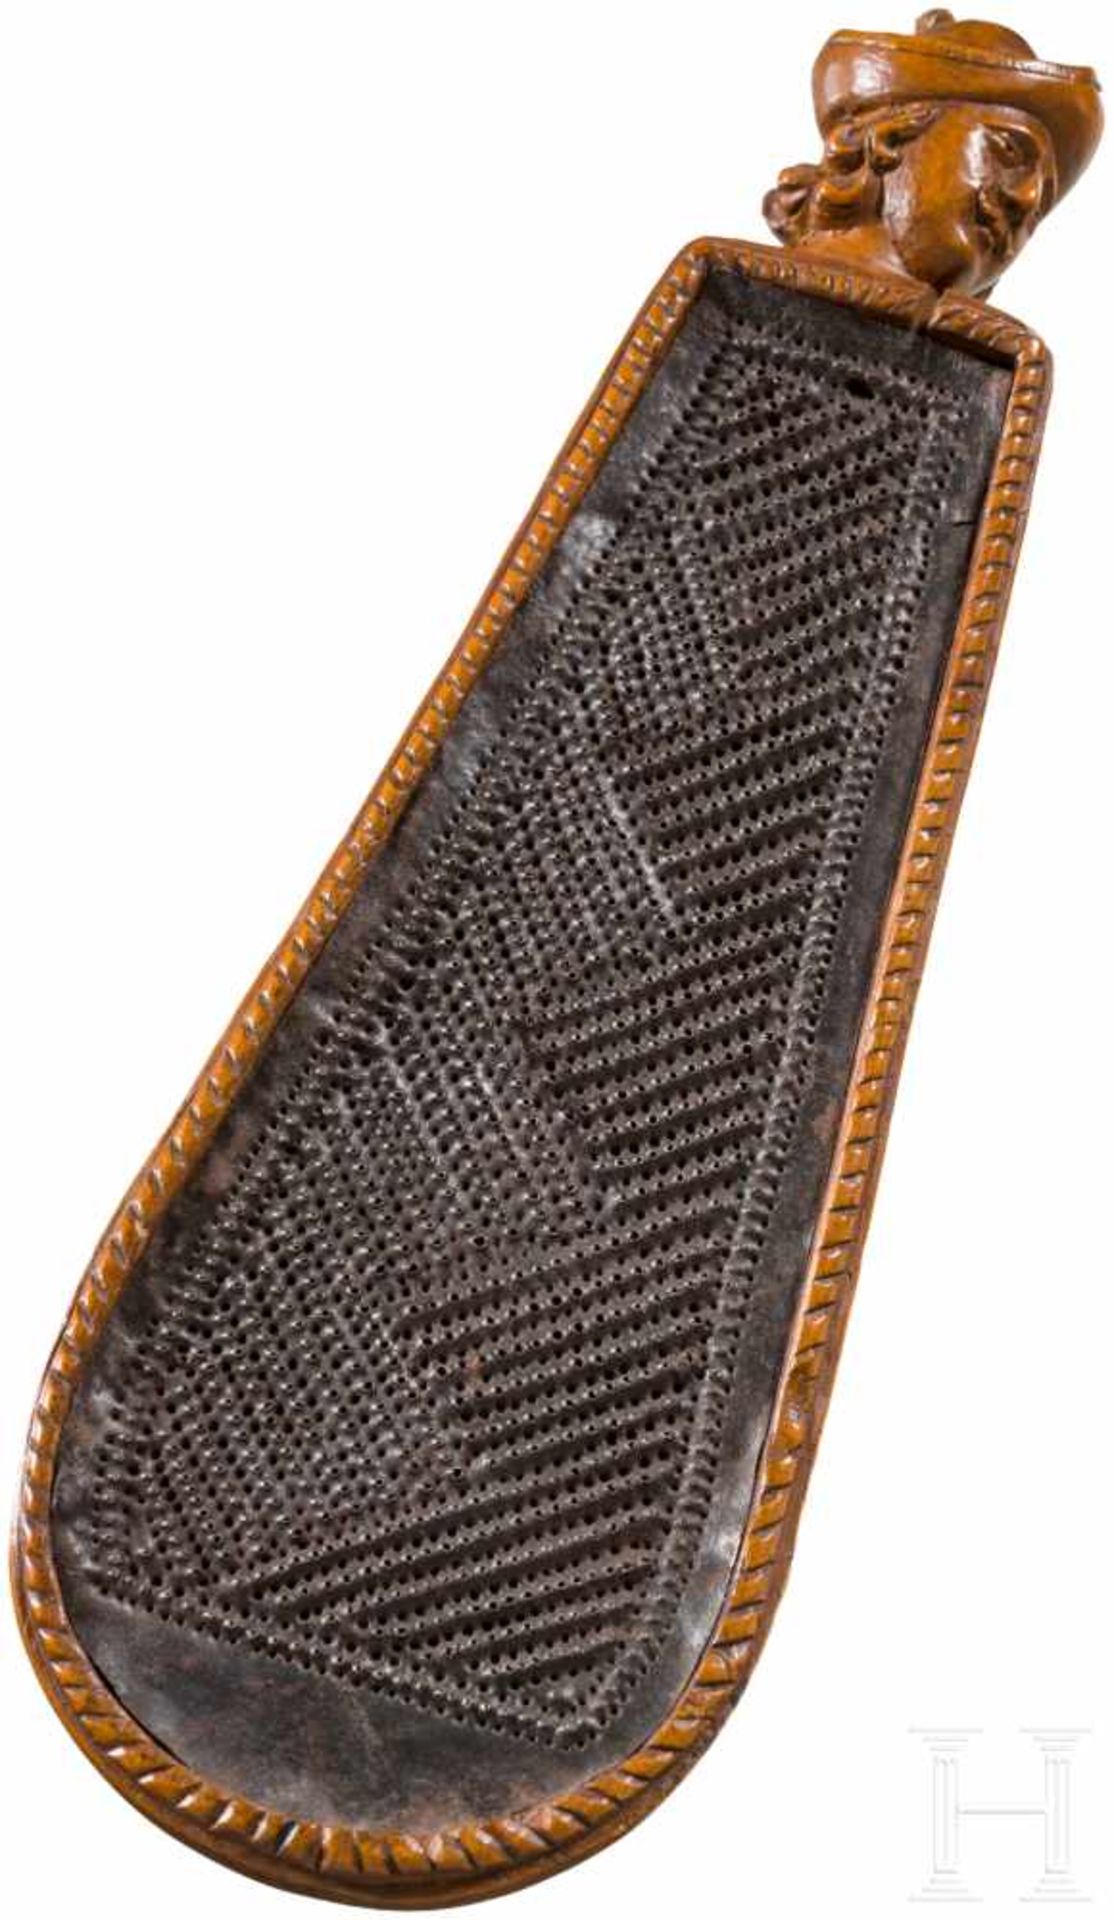 Tabakreibe, Frankreich, 18. Jhdt.Korpus aus Holz mit siebartigem Reibeeinsatz aus Eisen. Rückseite